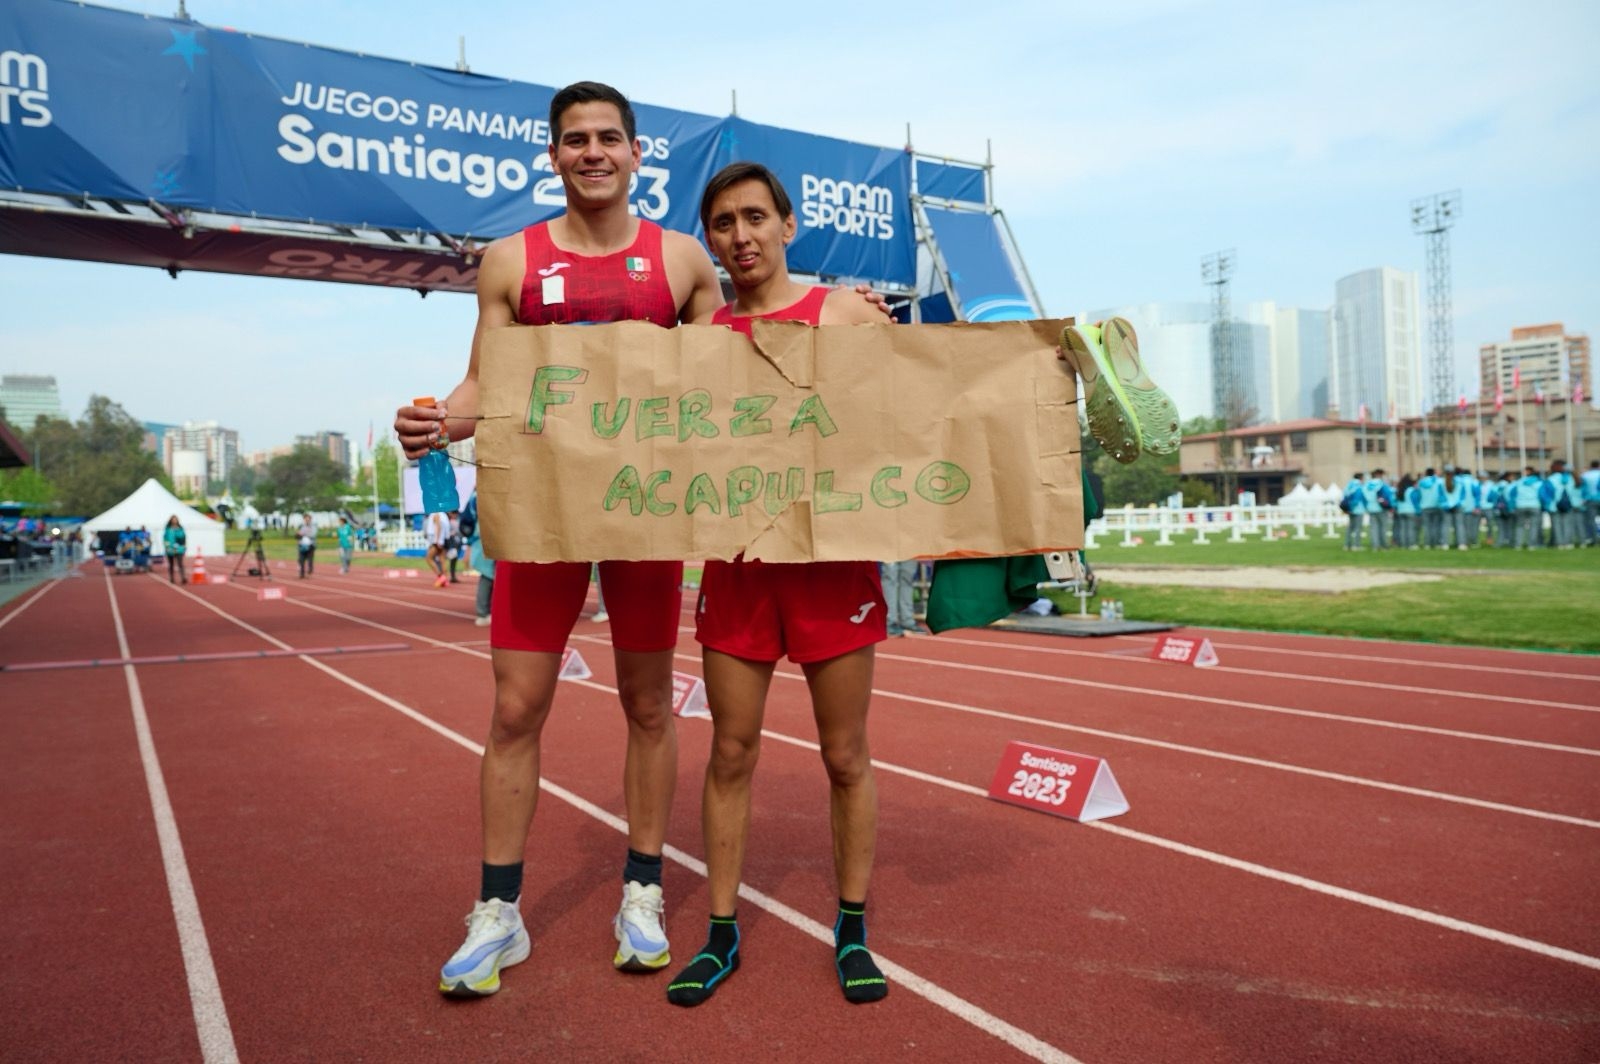 Juegos Panamericanos Santiago 2023: México consigue su quinta medalla de oro en Pentatlón Moderno